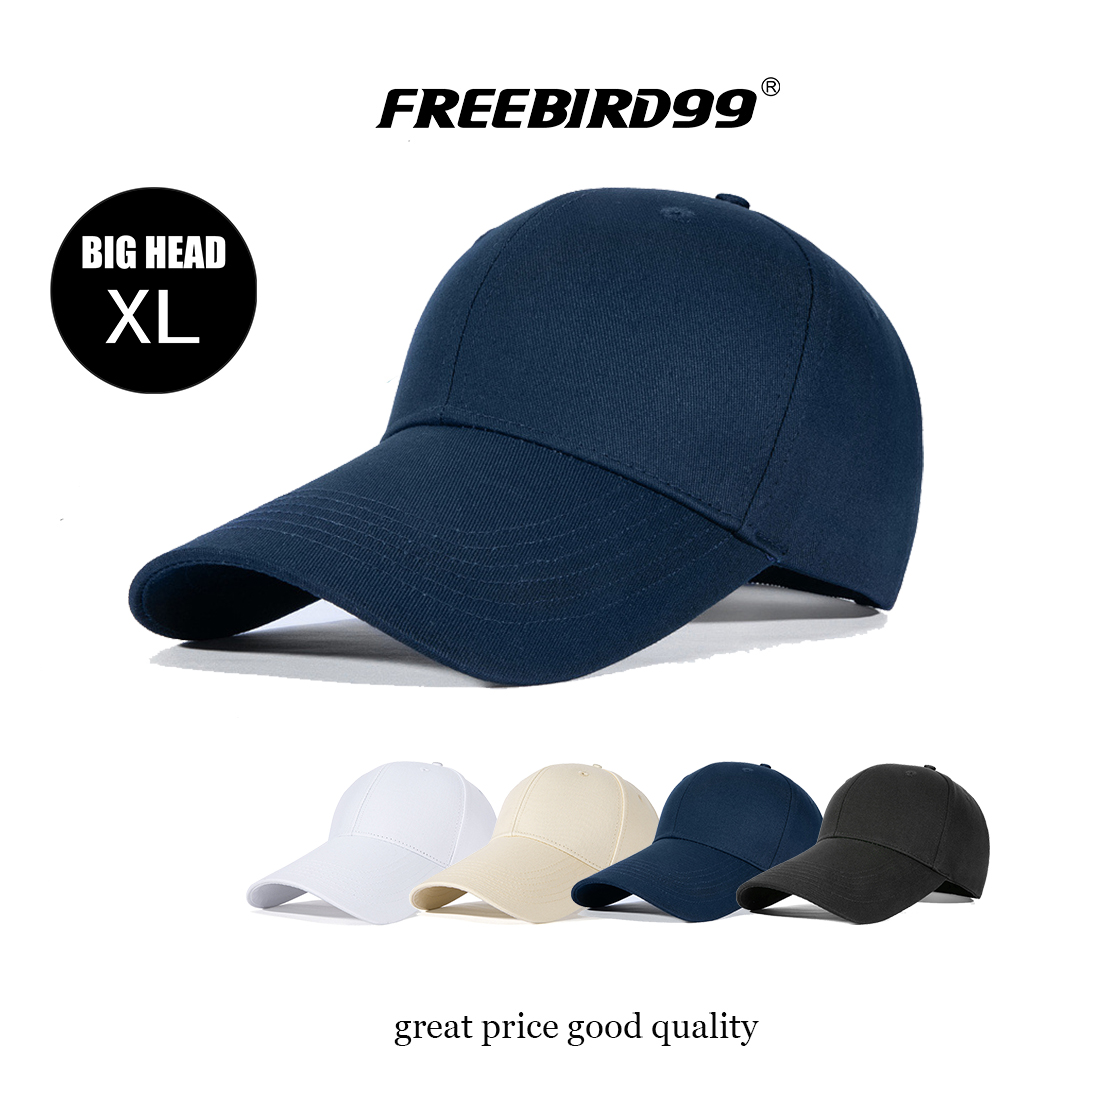 Big Head Long Brim Baseball Cap #16012 - FREEBIRD99 online hats shop